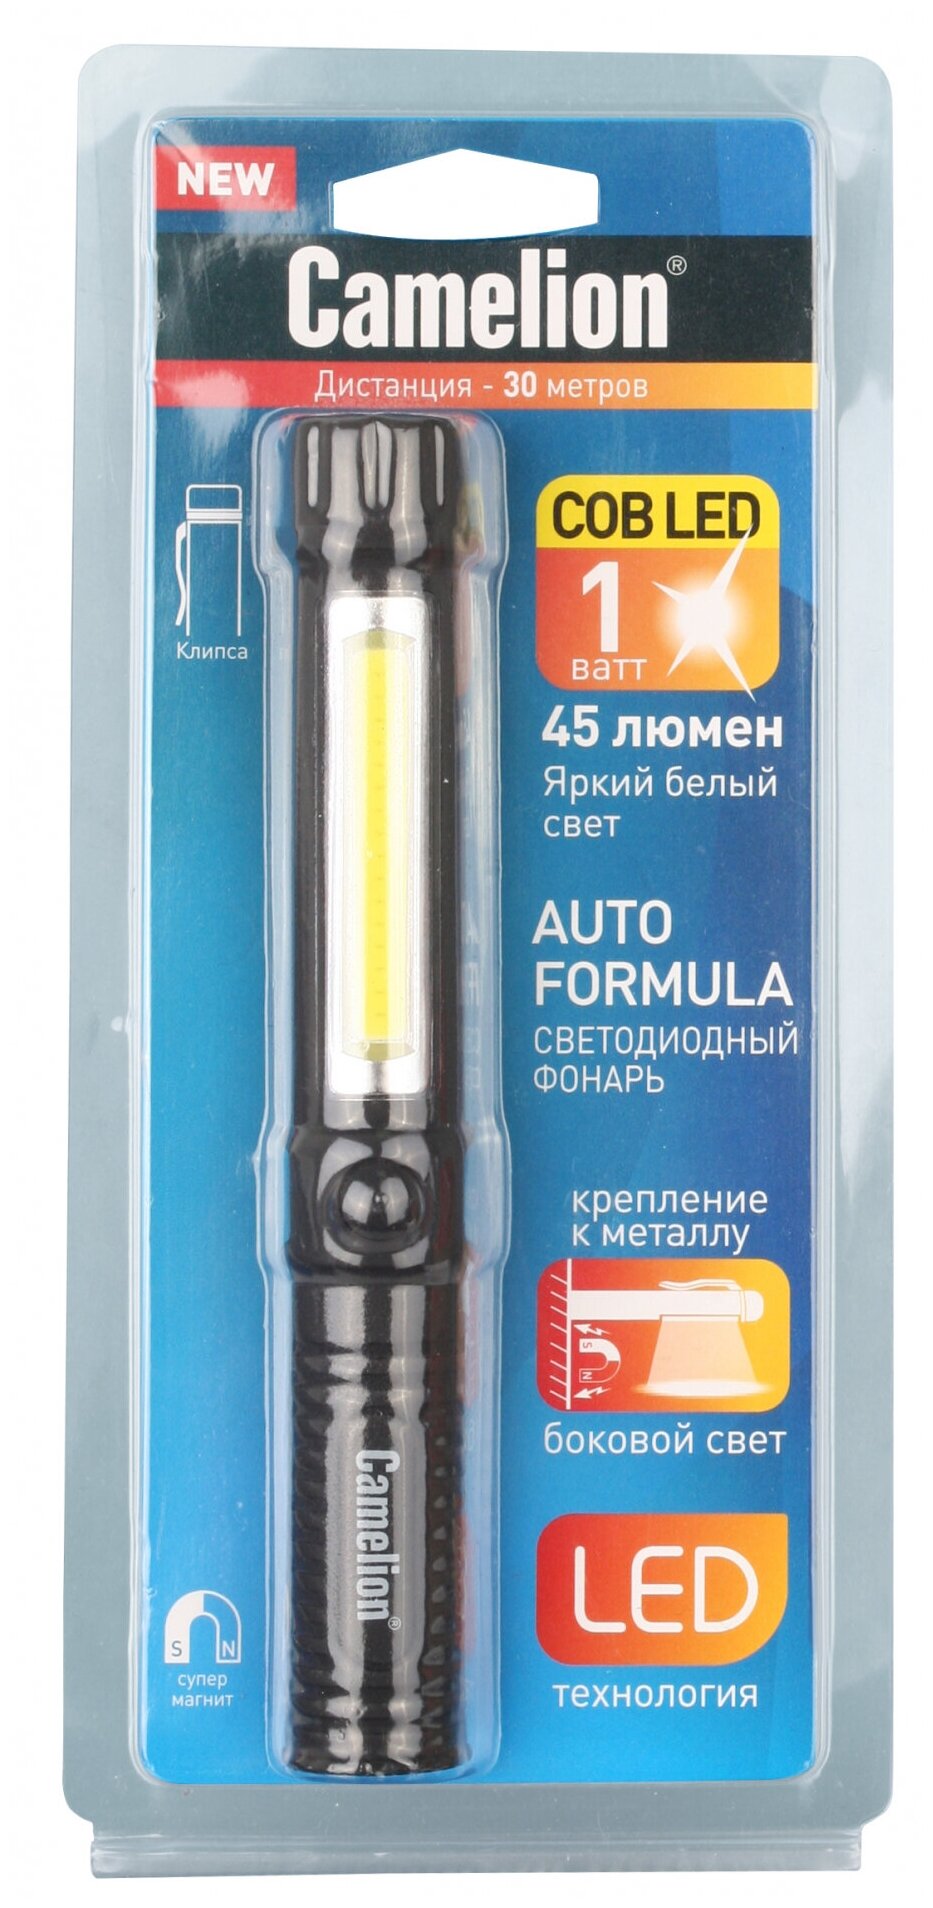 Сamelion (фонарь-ручка, COB LED+1W LED, 3XR03, пластик, магнит, клипса, блистер), CAMELION LED51521 (2 шт.) - фото №3